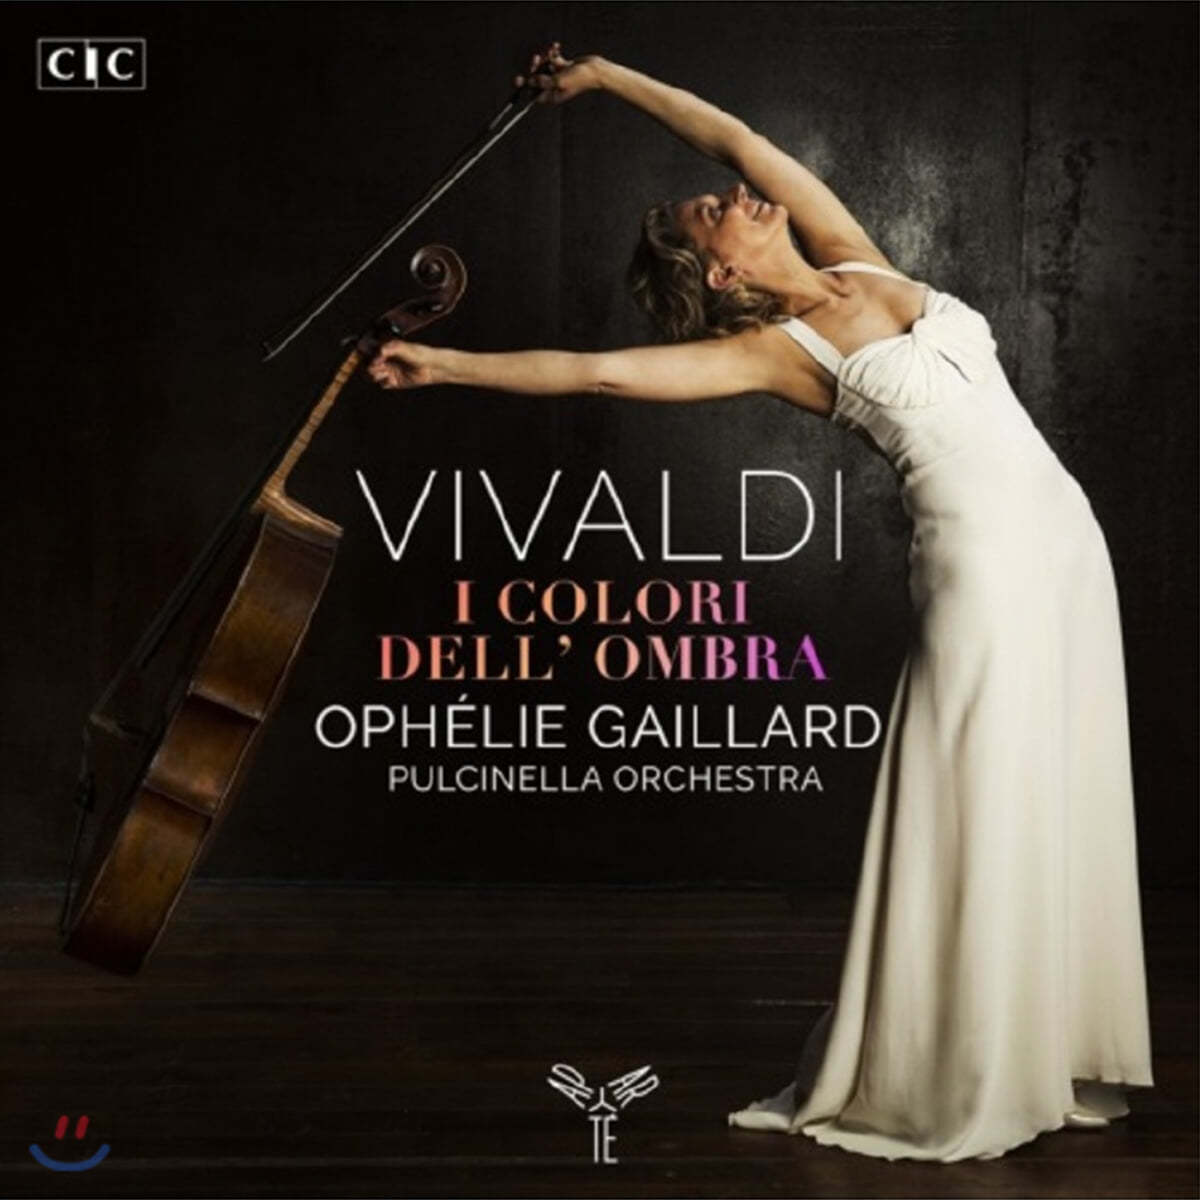 Ophelie Gaillard 비발디: 첼로 협주곡 (Vivaldi: I colori dell’ombra)